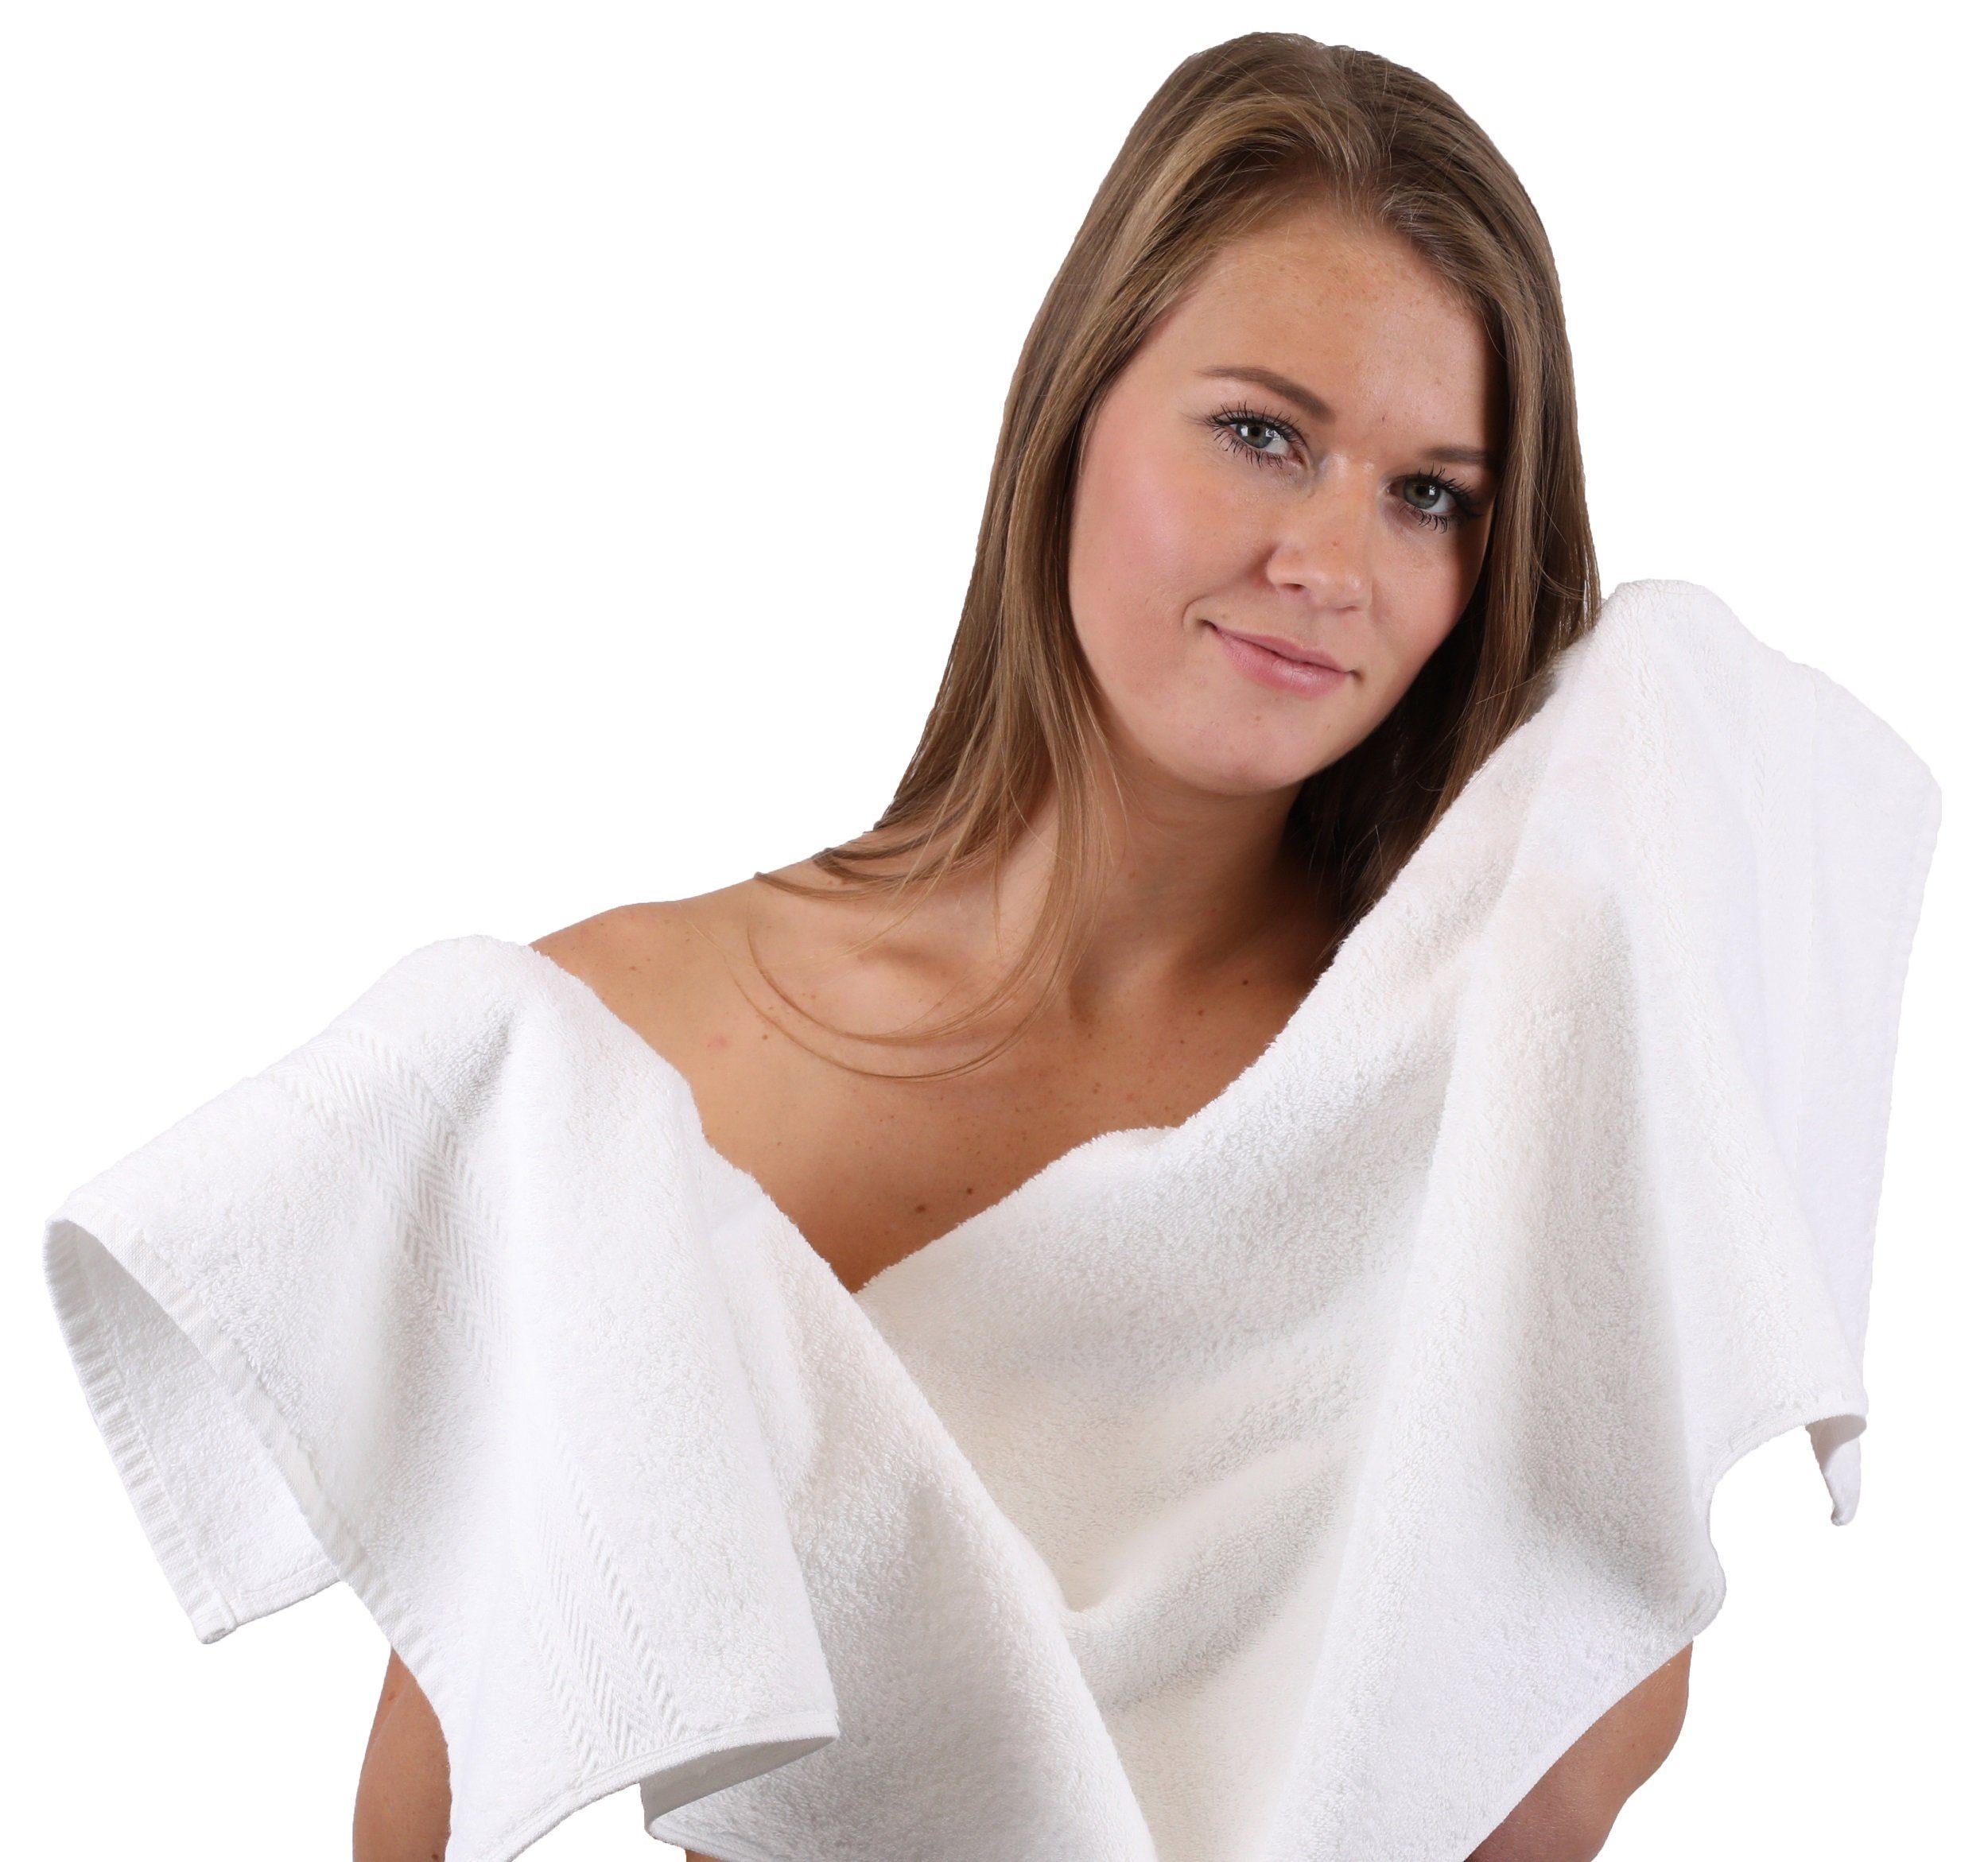 Betz Handtuch Set Farbe 100% Baumwolle 100% Premium Handtuch-Set Baumwolle hellblau, 4 6-TLG. weiß Duschtücher 2 und Handtücher